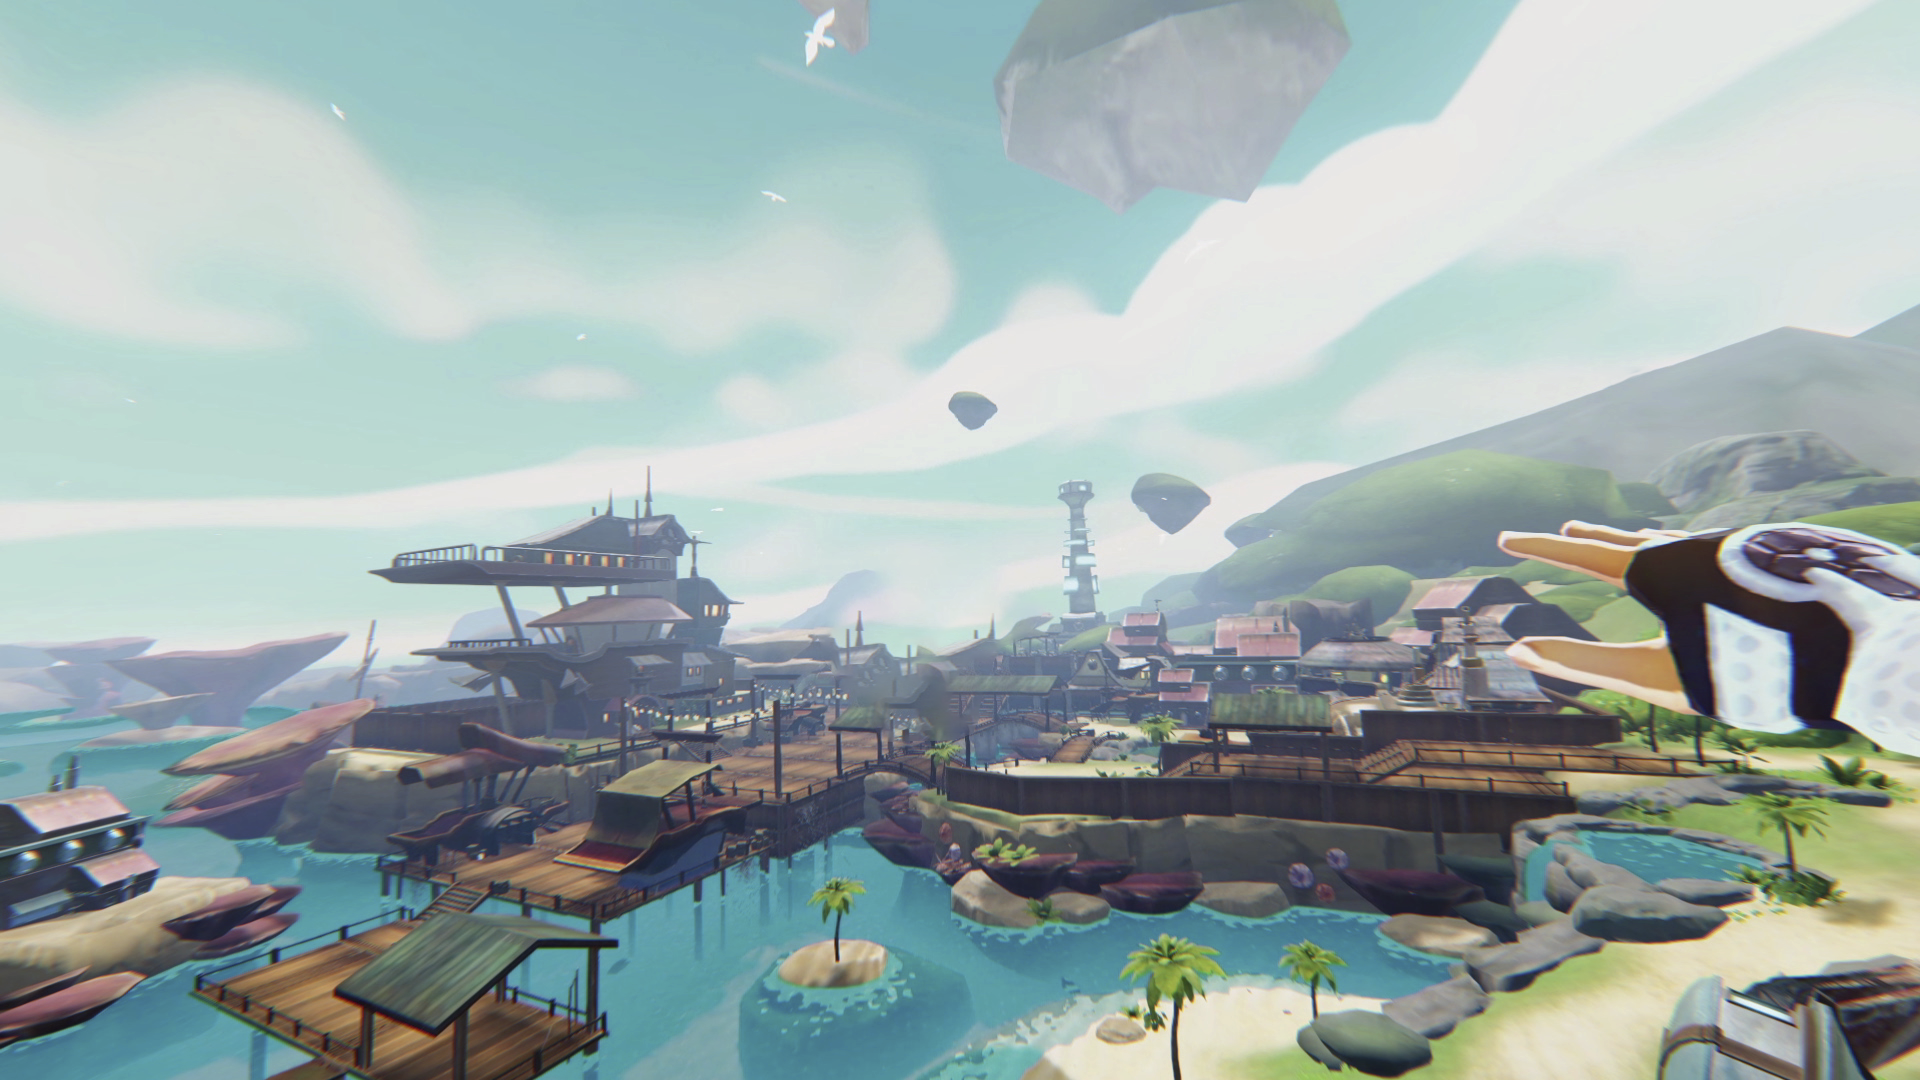 لقطة شاشة لتجربة اللعب من لعبة Zenith على PS VR